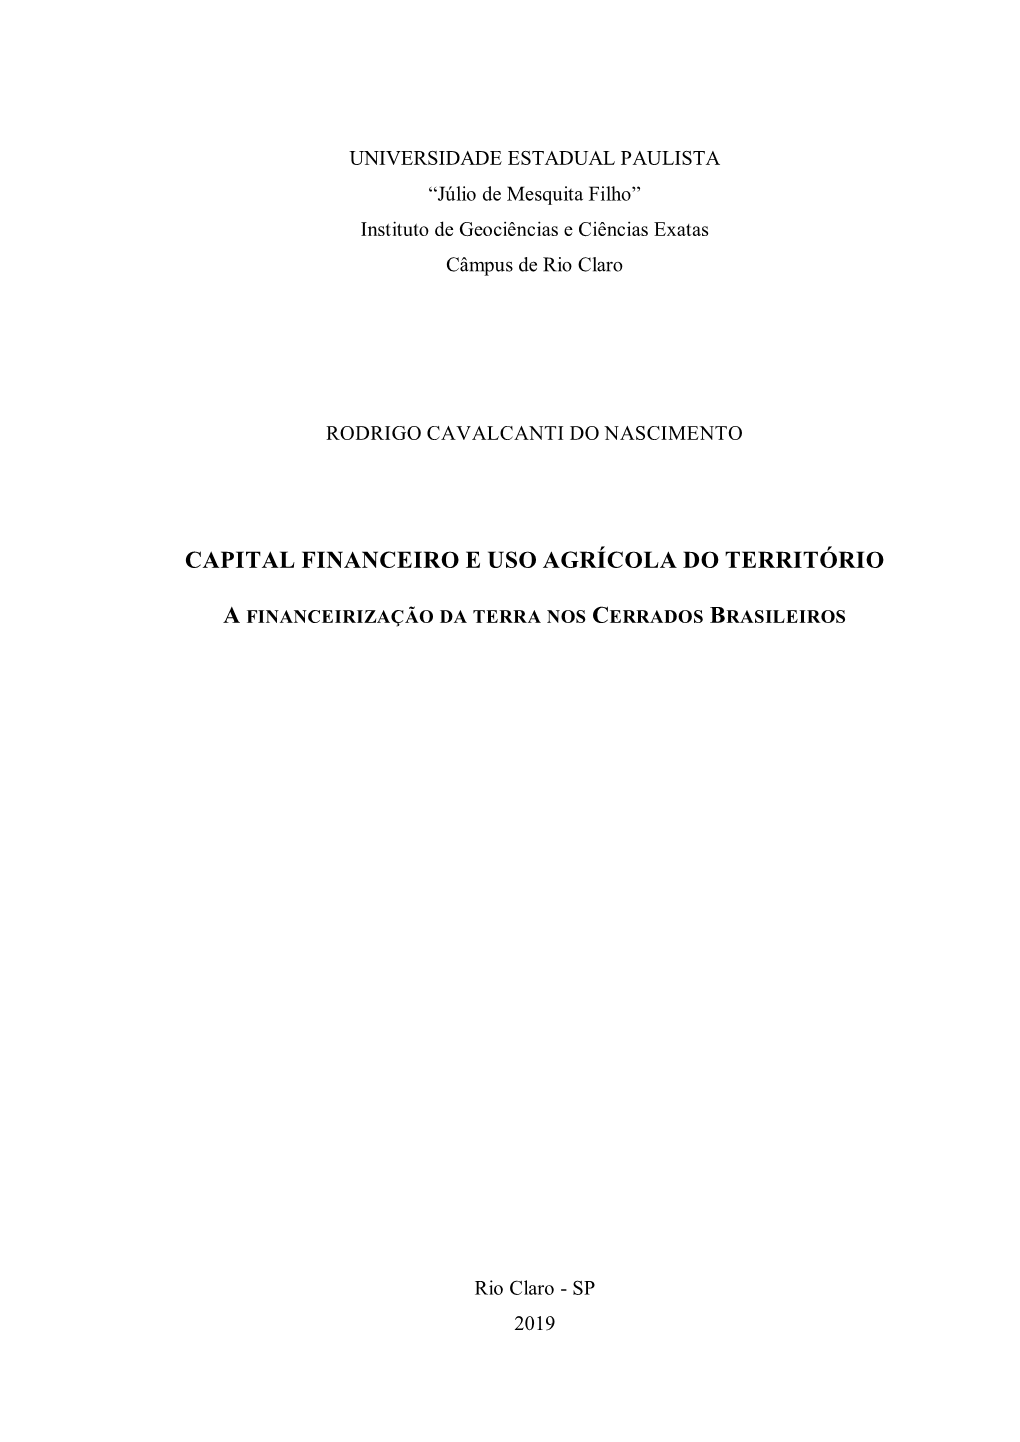 Capital Financeiro E Uso Agrícola Do Território